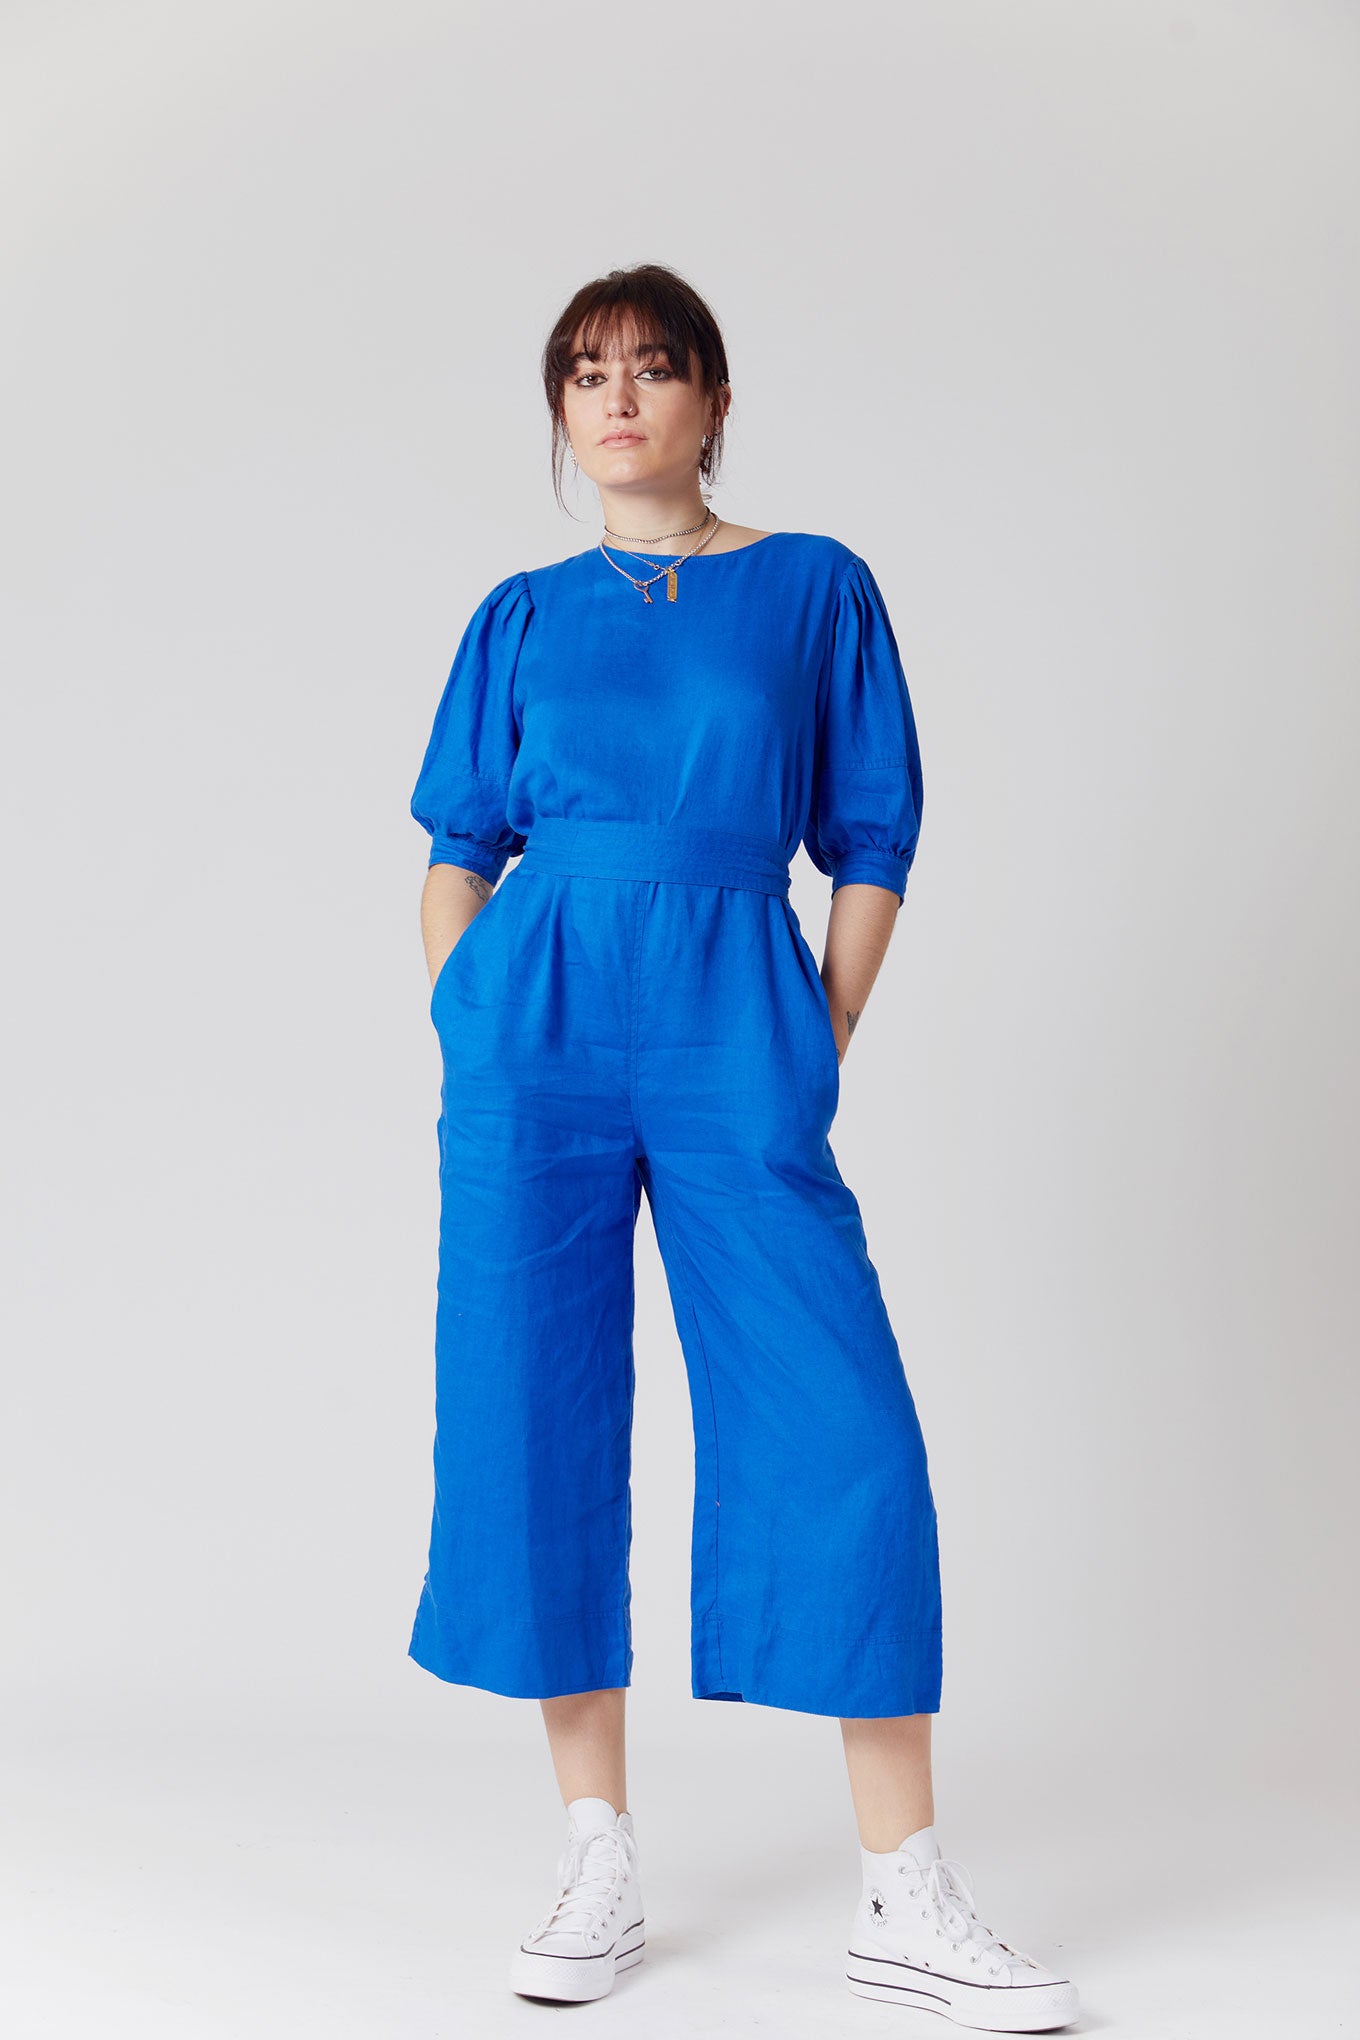 FAYE Organic Linen Jumpsuit Blue, SIZE 2 / UK 10 / EUR 38